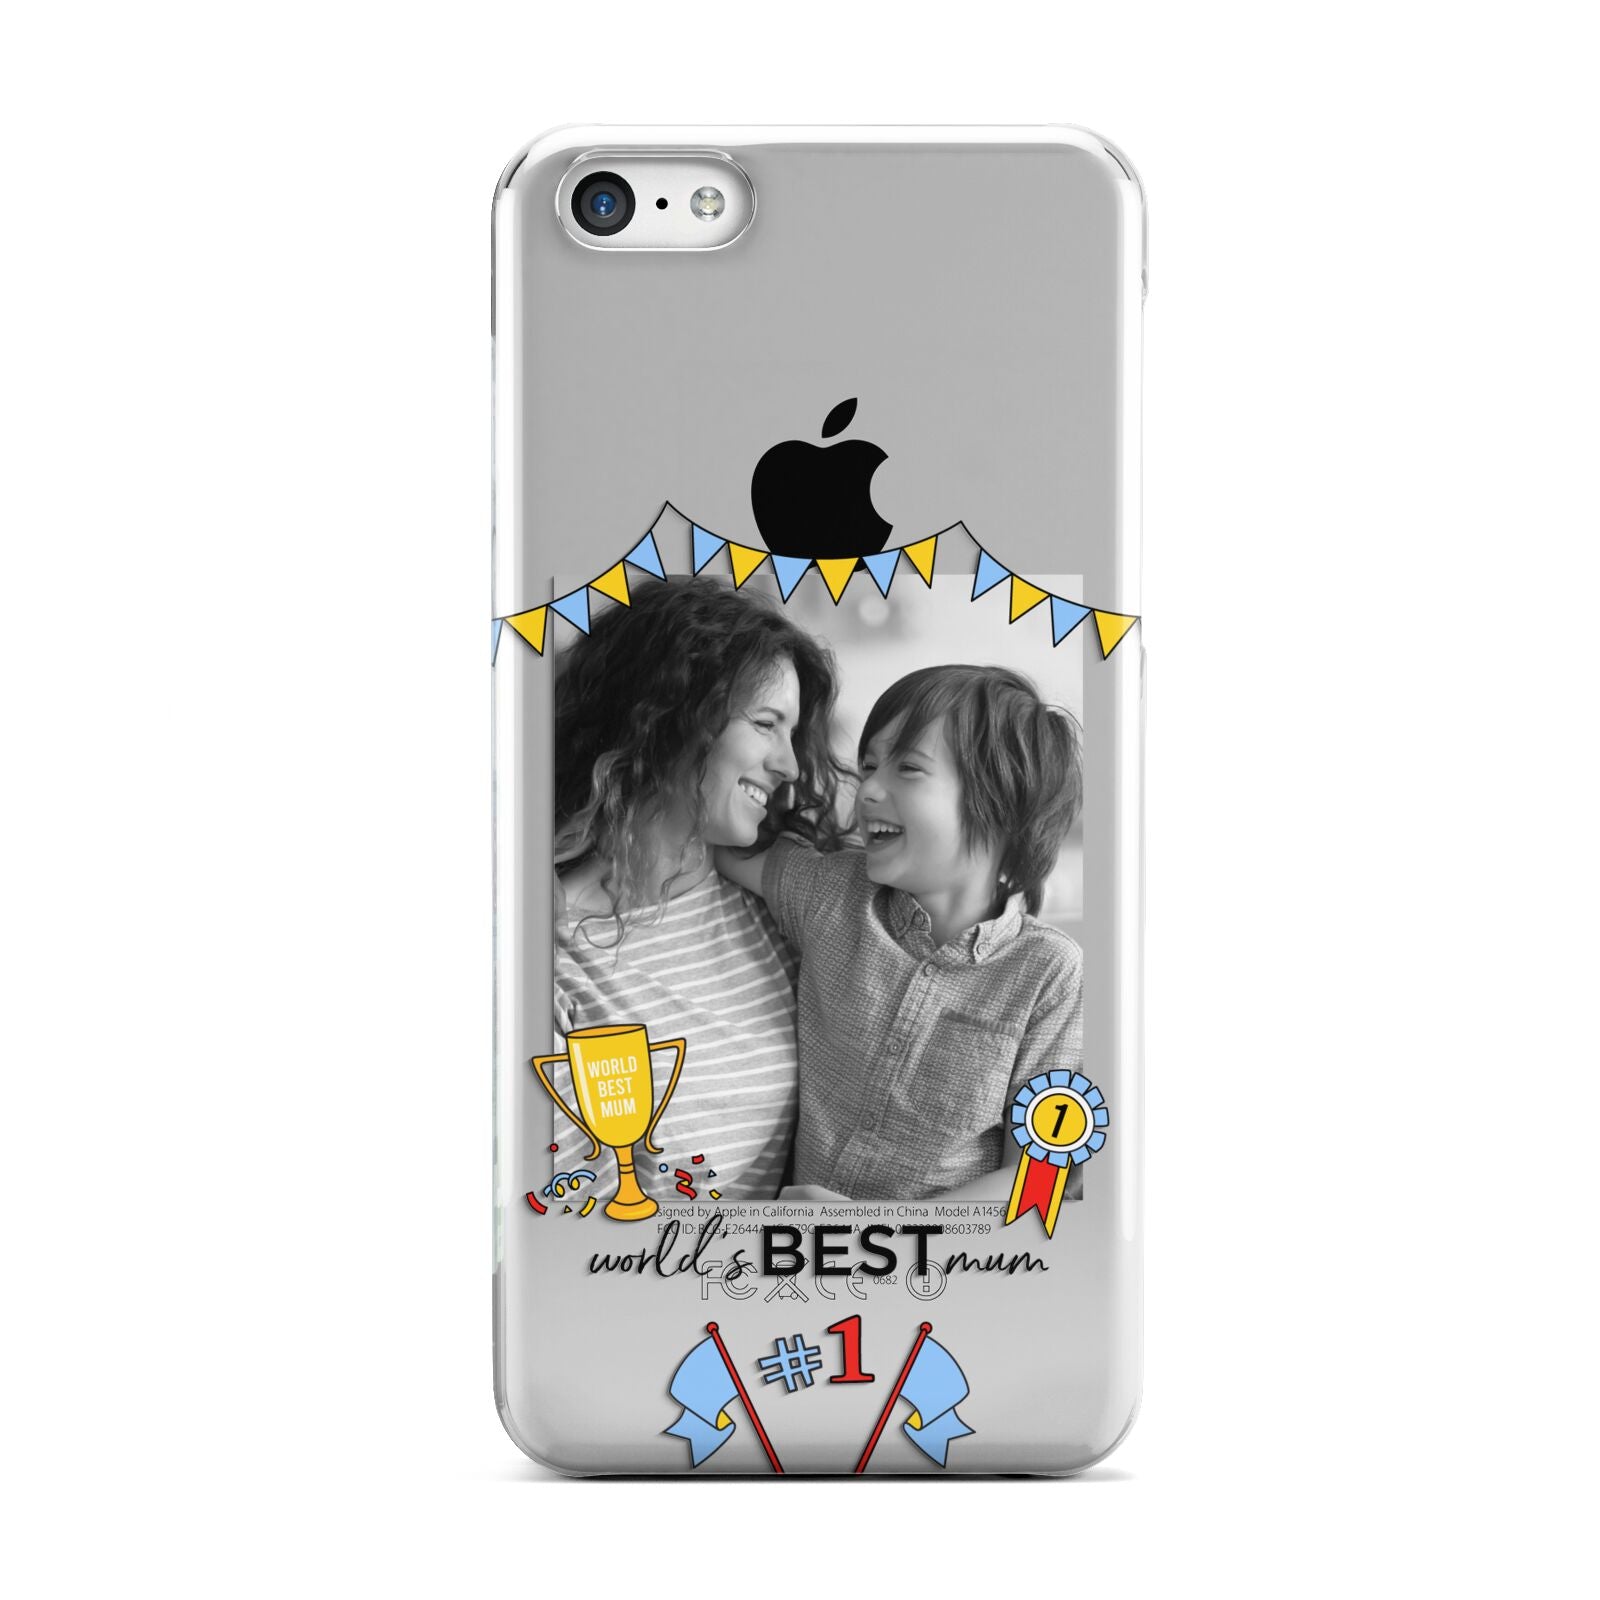 Worlds Best Mum Apple iPhone 5c Case